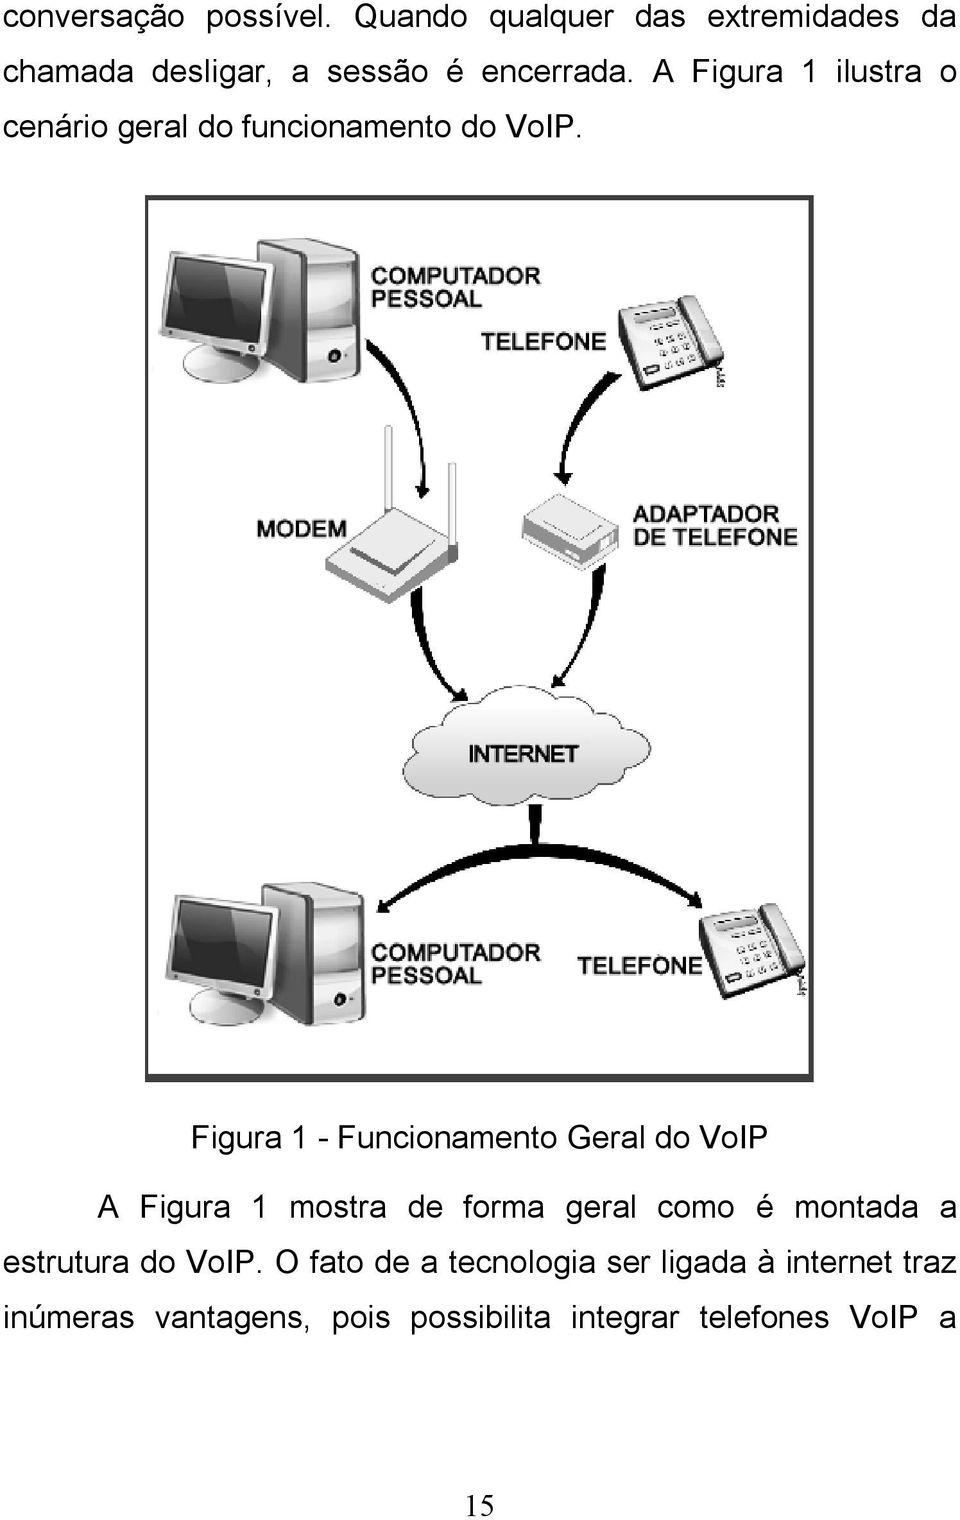 A Figura 1 ilustra o cenário geral do funcionamento do VoIP.